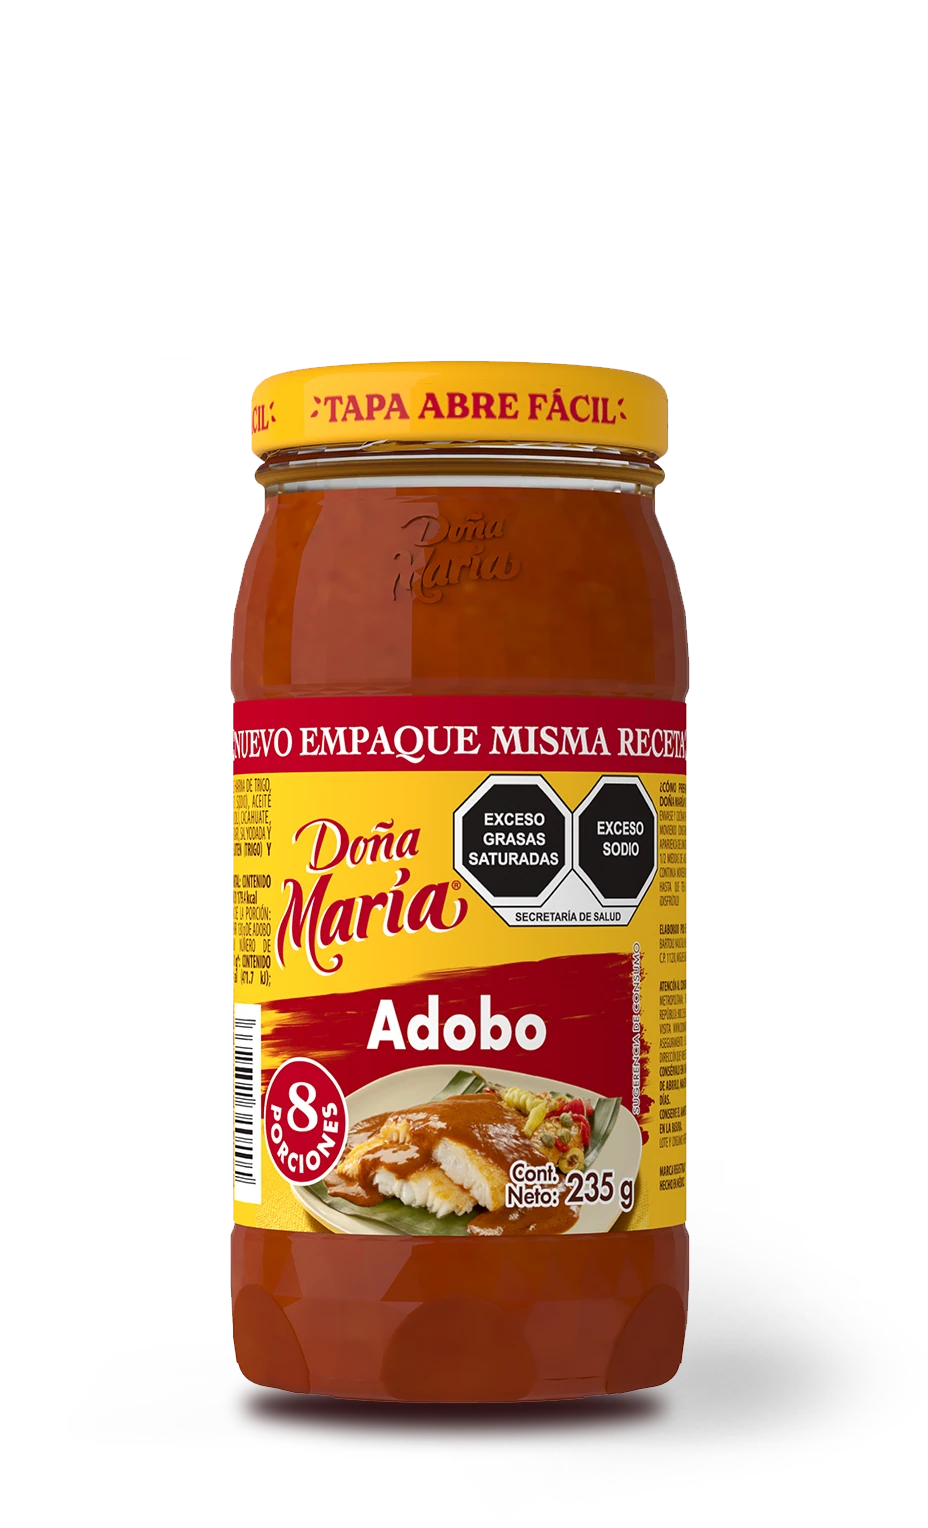 Product Adobo Doña María ®